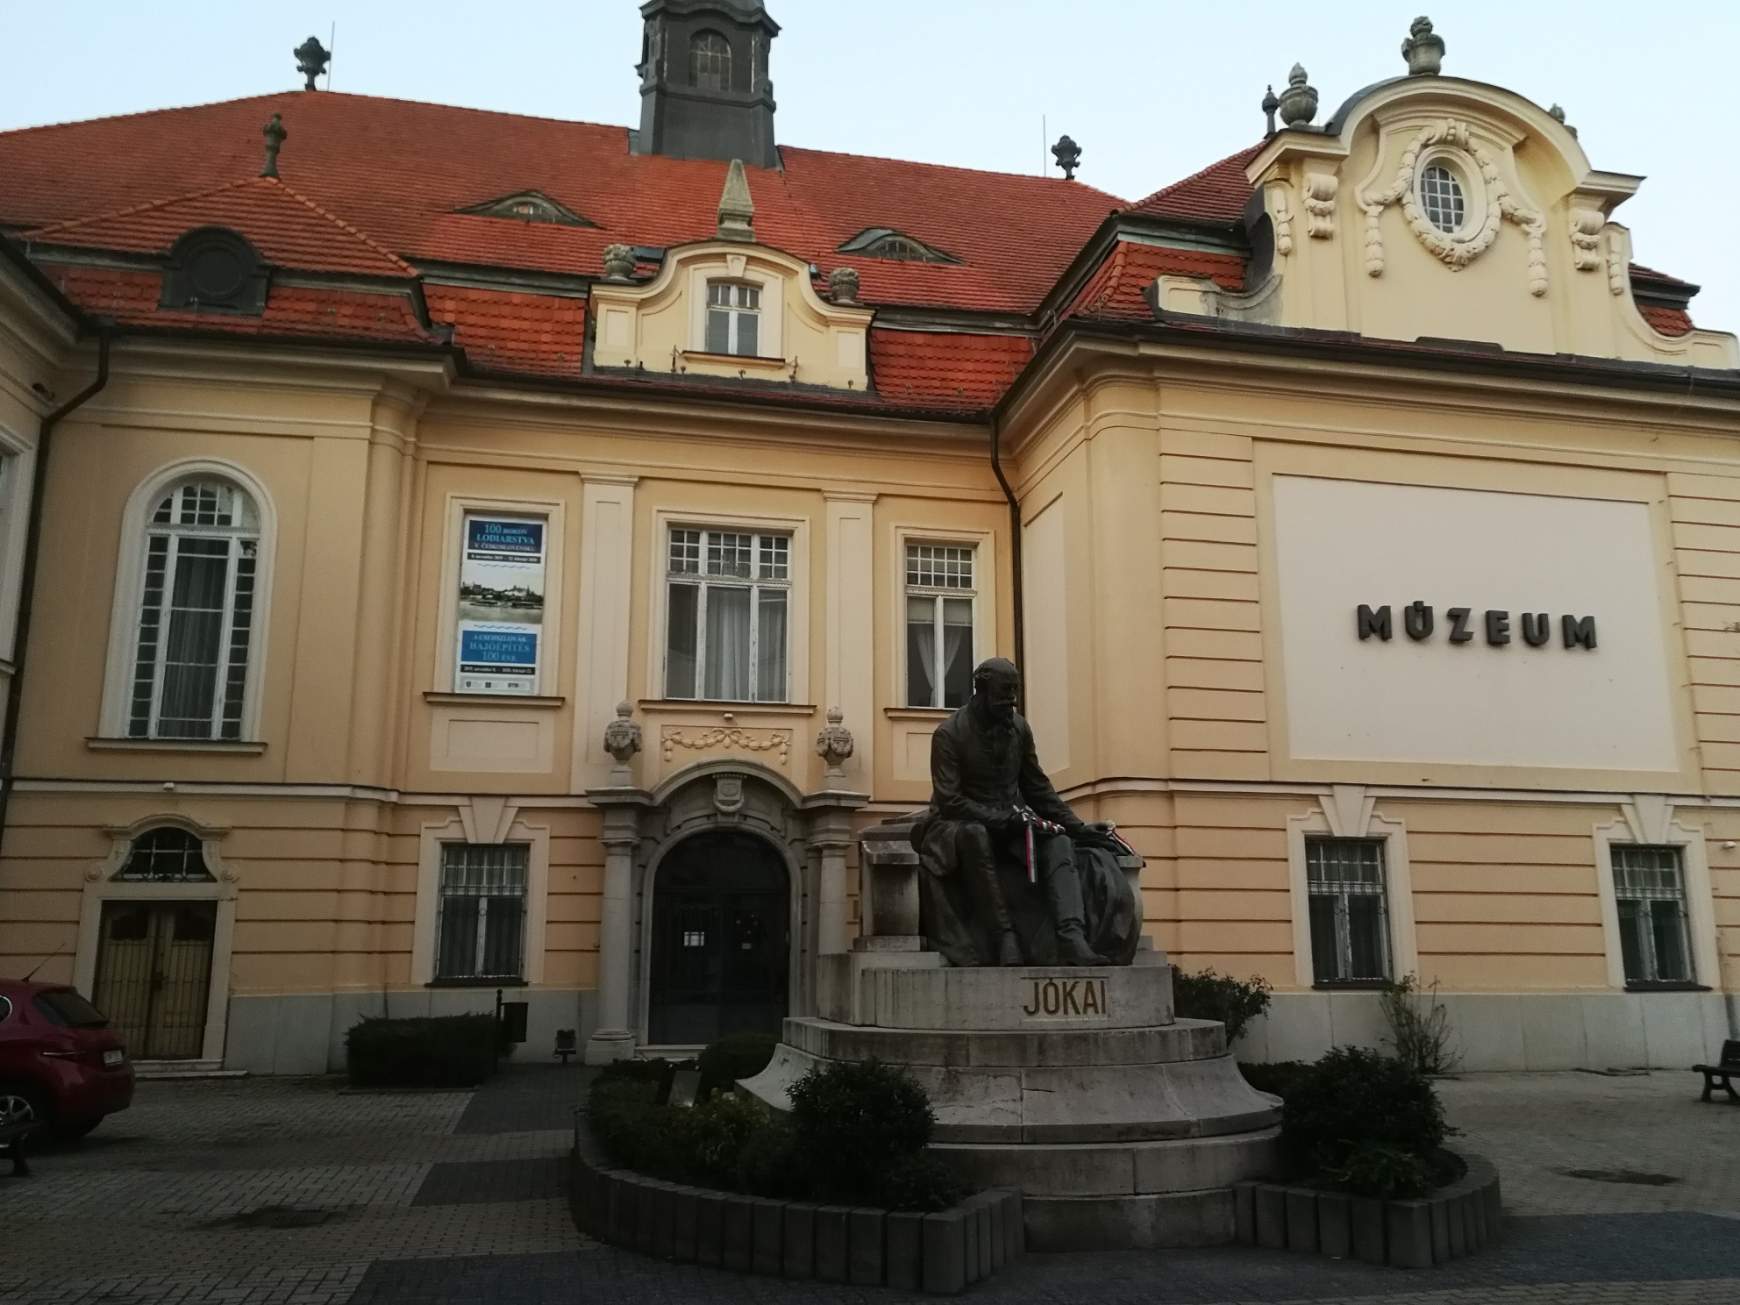 Duna Menti Múzeum